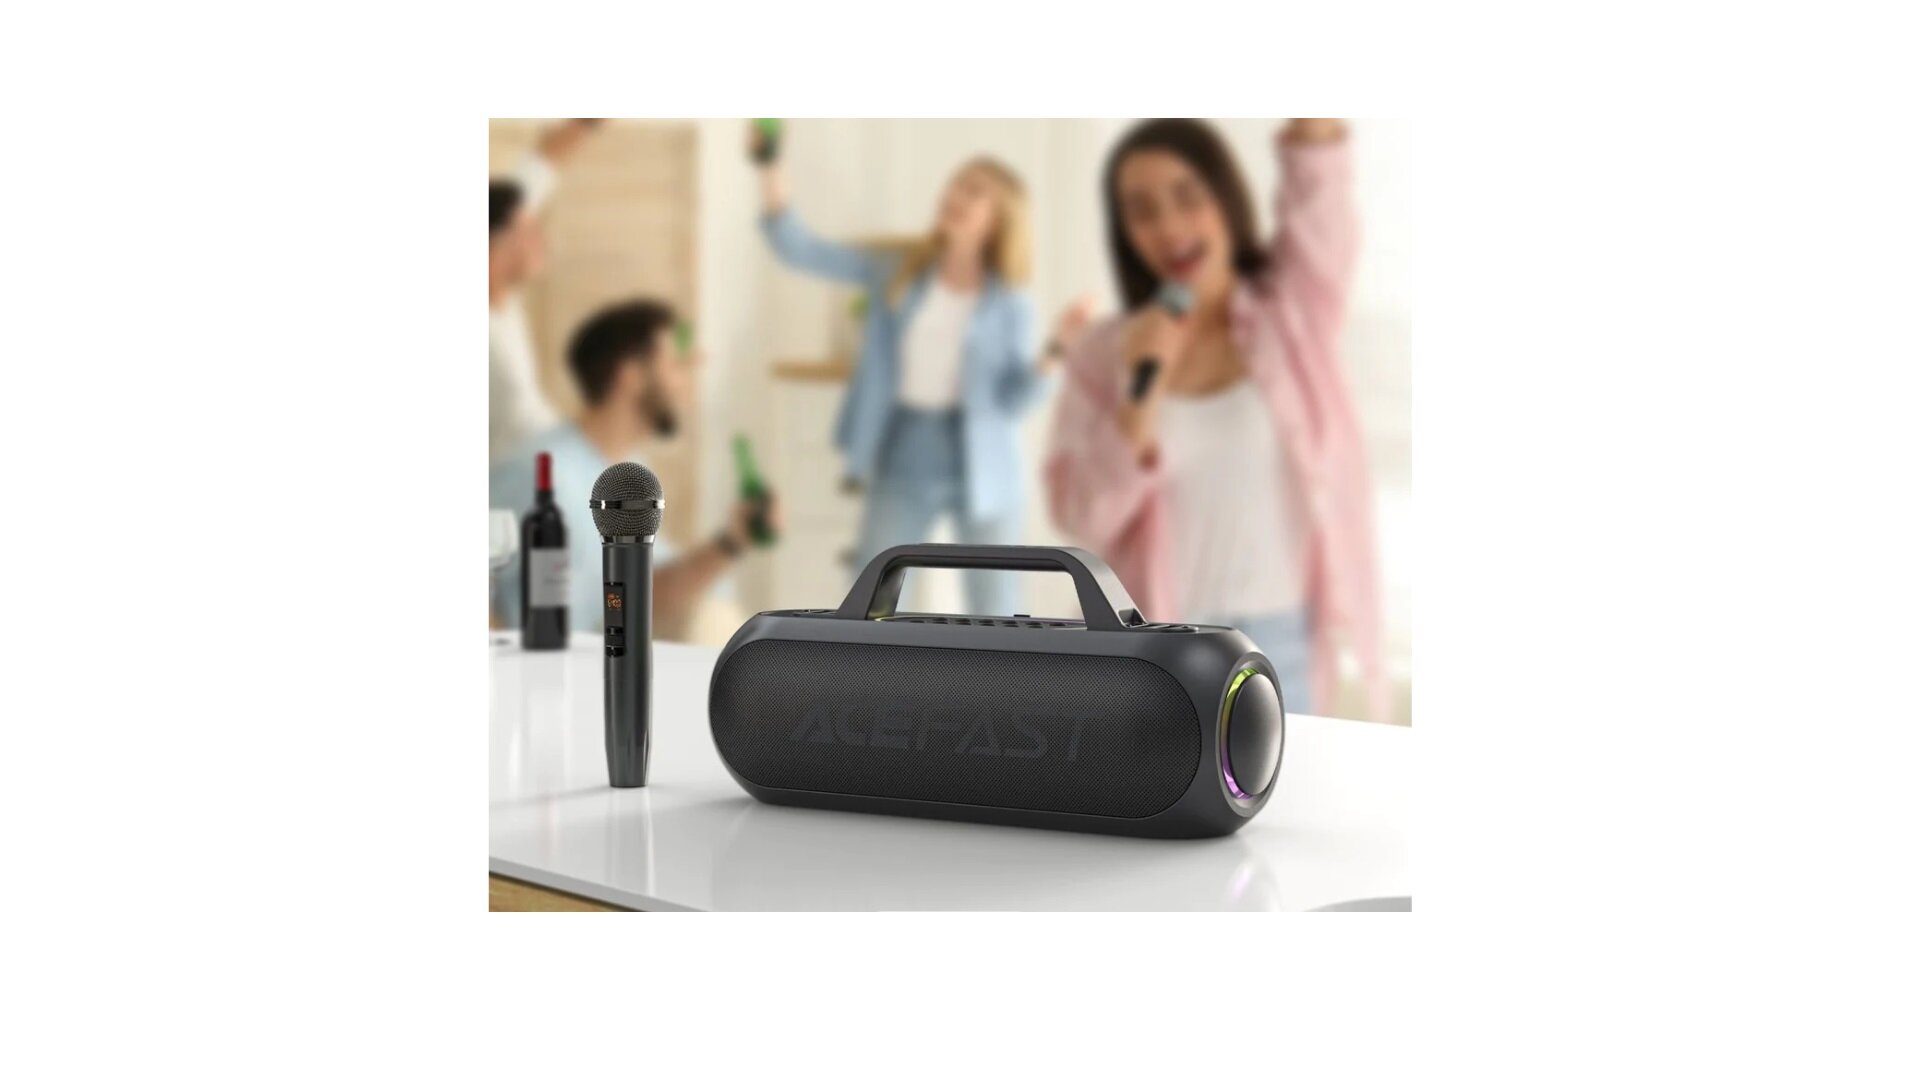 Караоке станция ACEFAST Portable Karaoke Speaker 200W 18000 mAh + 2 беспроводных микрофона Черный